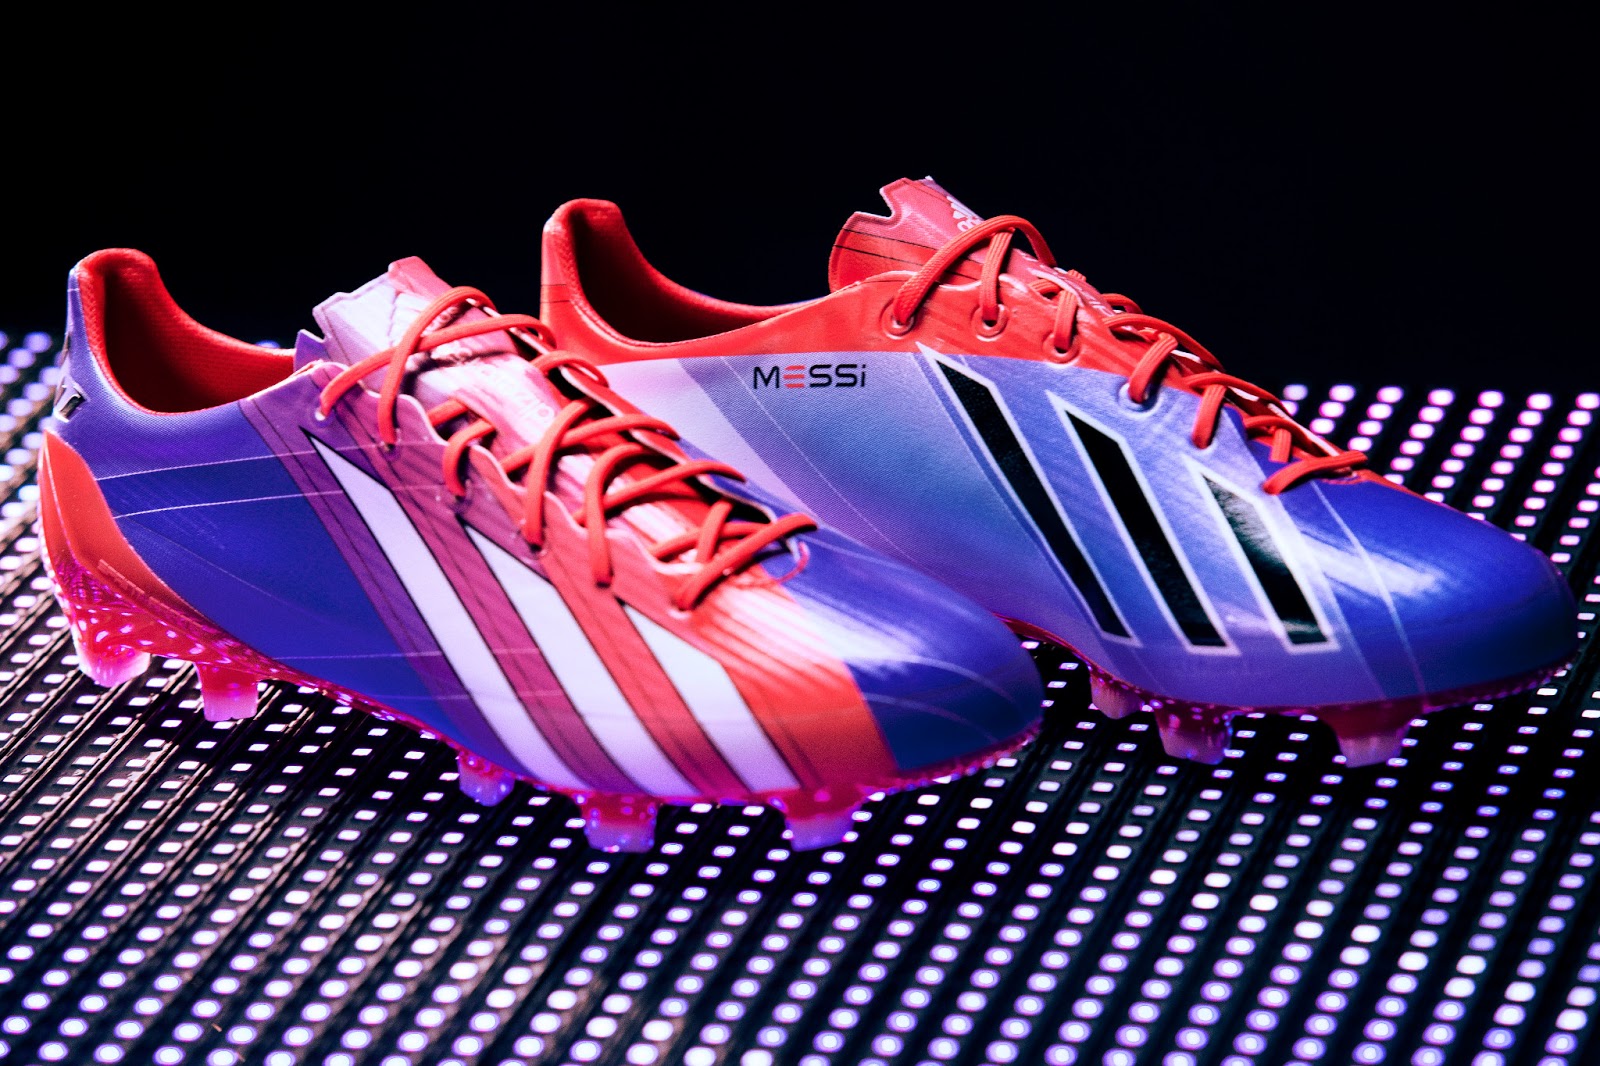 scheuren Contractie Zeemeeuw adidas AdiZero III 13/14 Messi Boot Released - Light Up The Pitch - Footy  Headlines